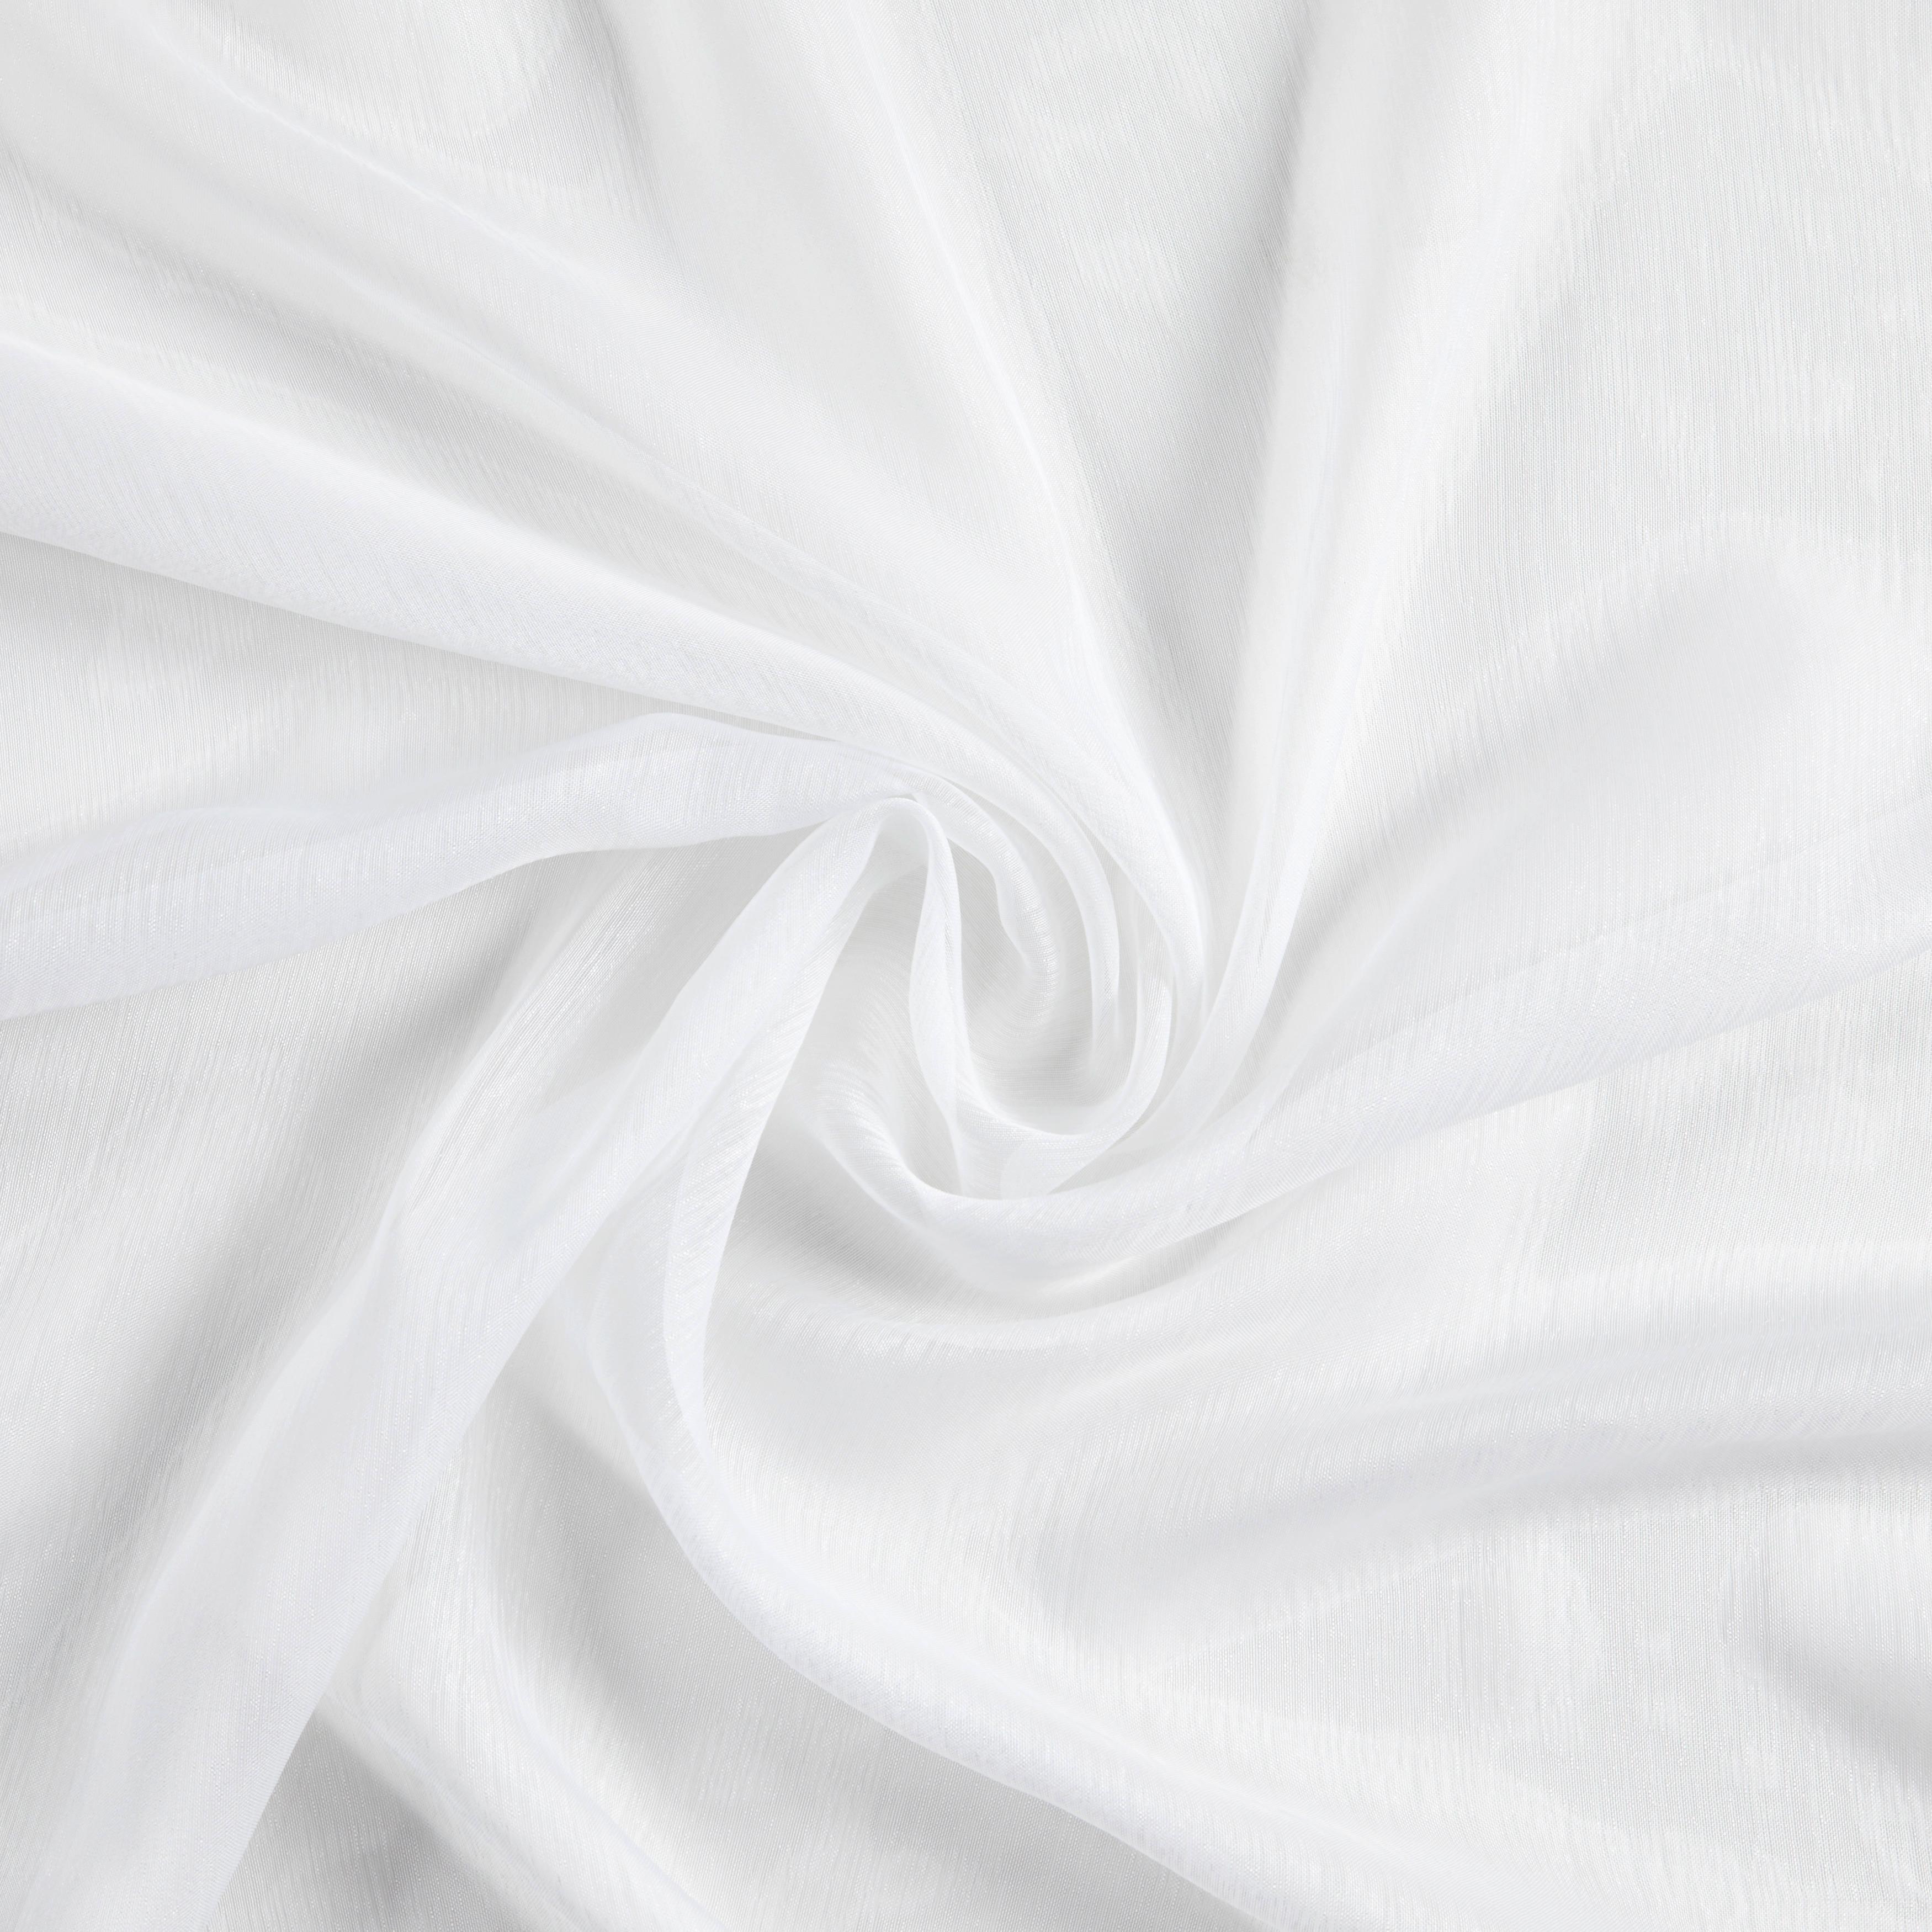 Závěs S Kroužky Dolly, 140/245 Cm - bílá, textil (140/245cm) - Modern Living